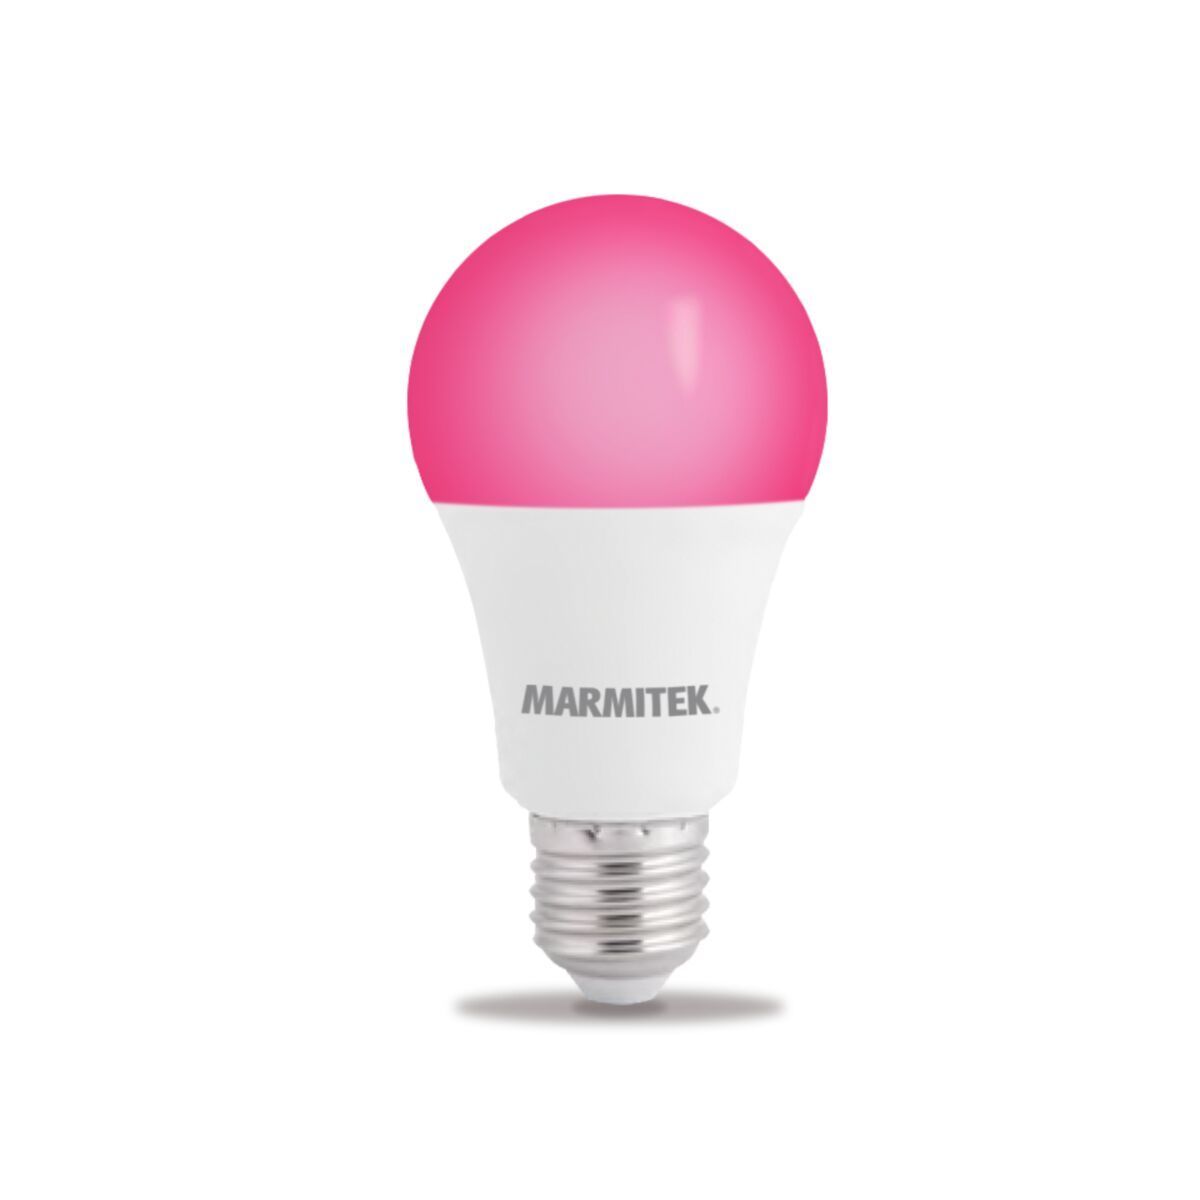 Marmitek Glow MO - Slimme lamp (Kleur)